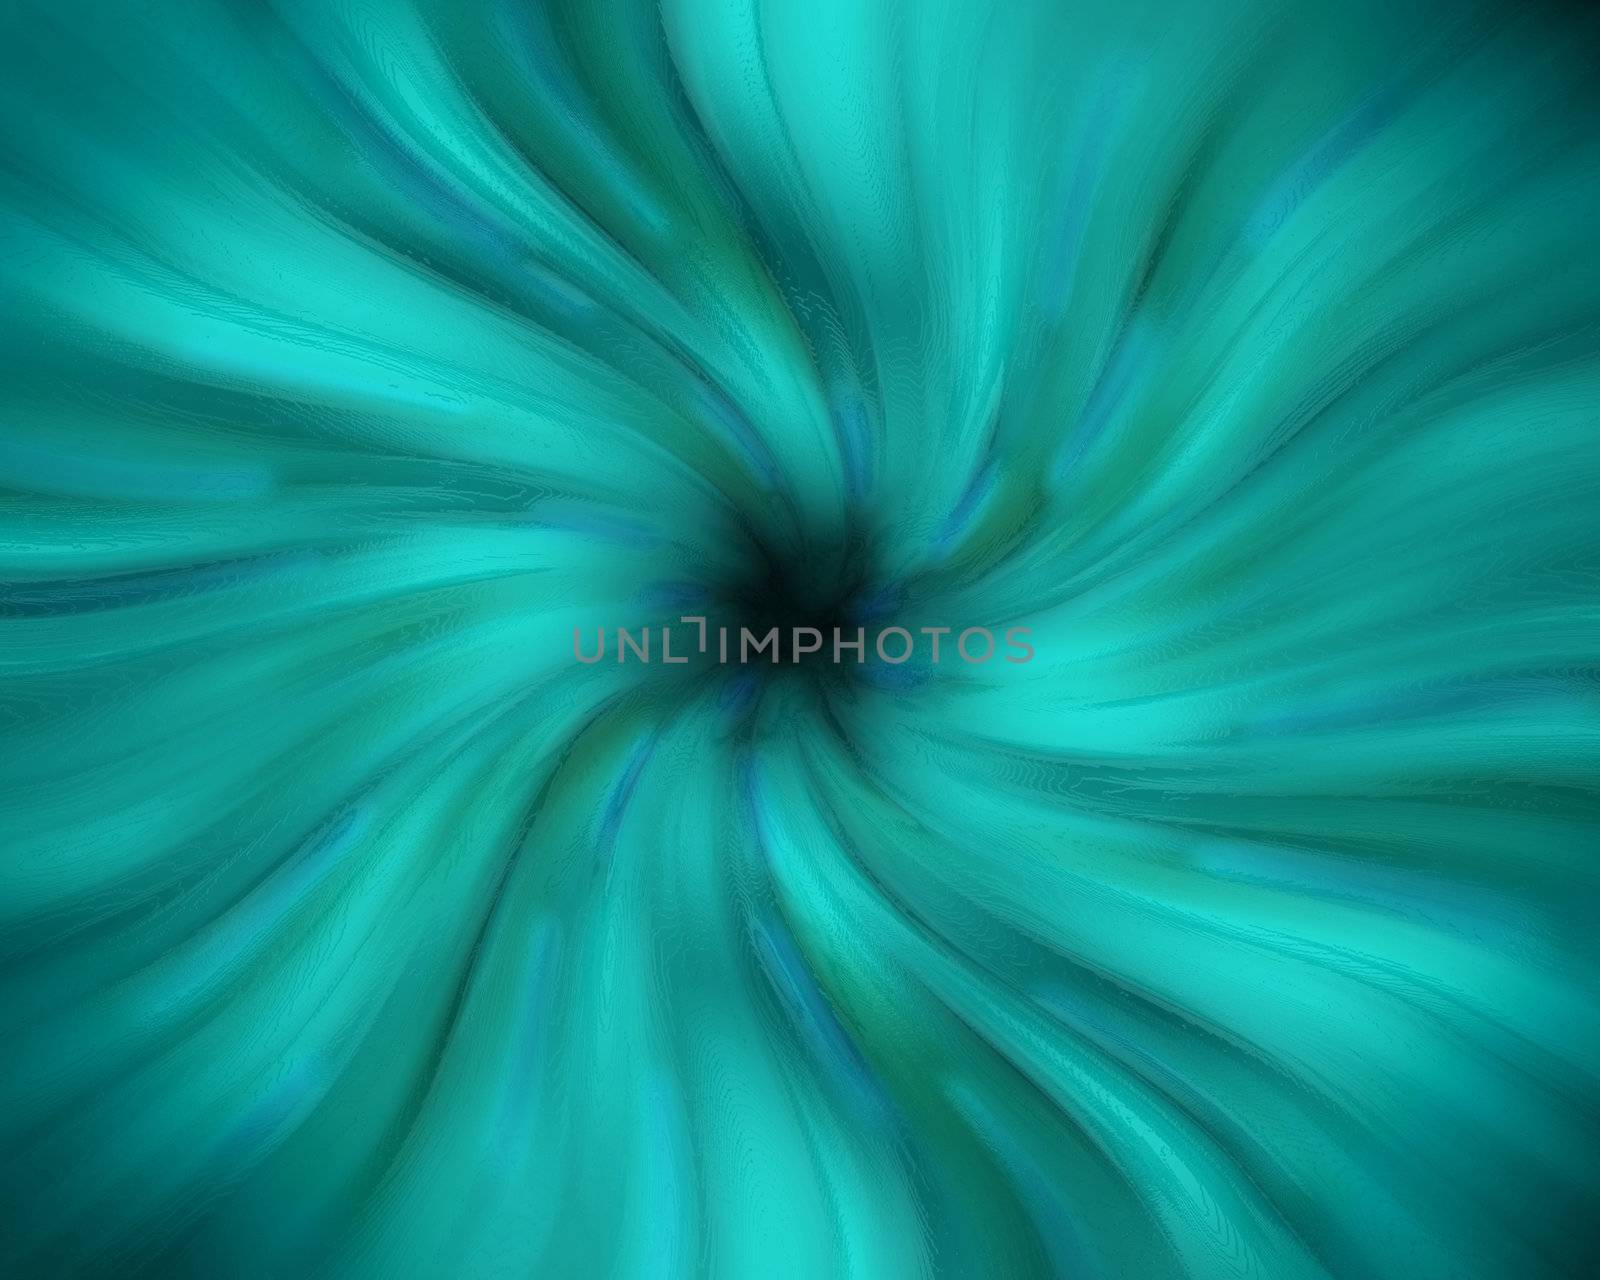 Blue swirling pastel vortex with a dark center